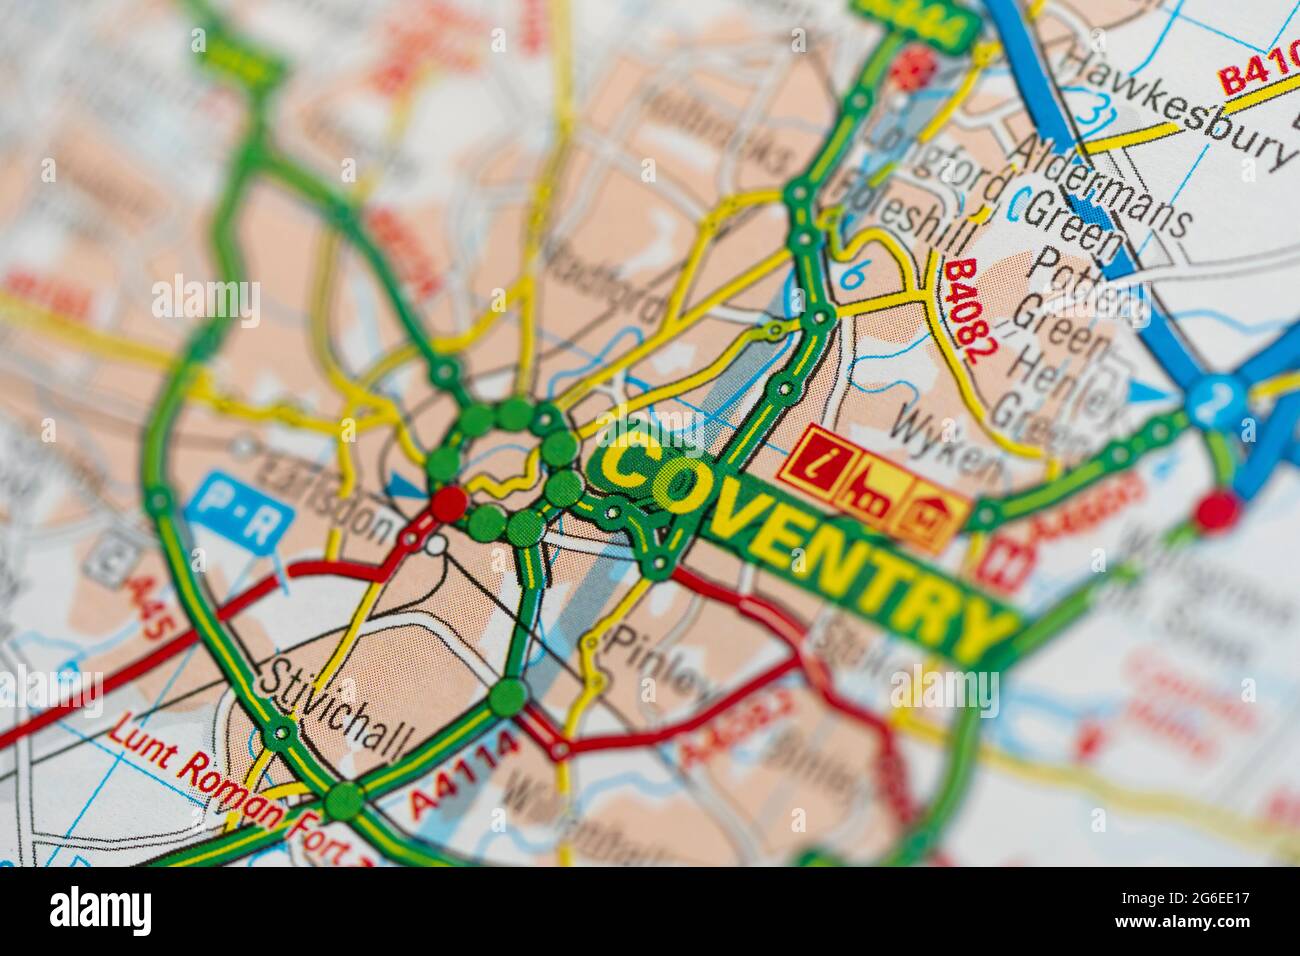 Eine Makroansicht einer Seite in einem gedruckten Straßenkarte-Atlas, der die Stadt Coventry in England zeigt Stockfoto